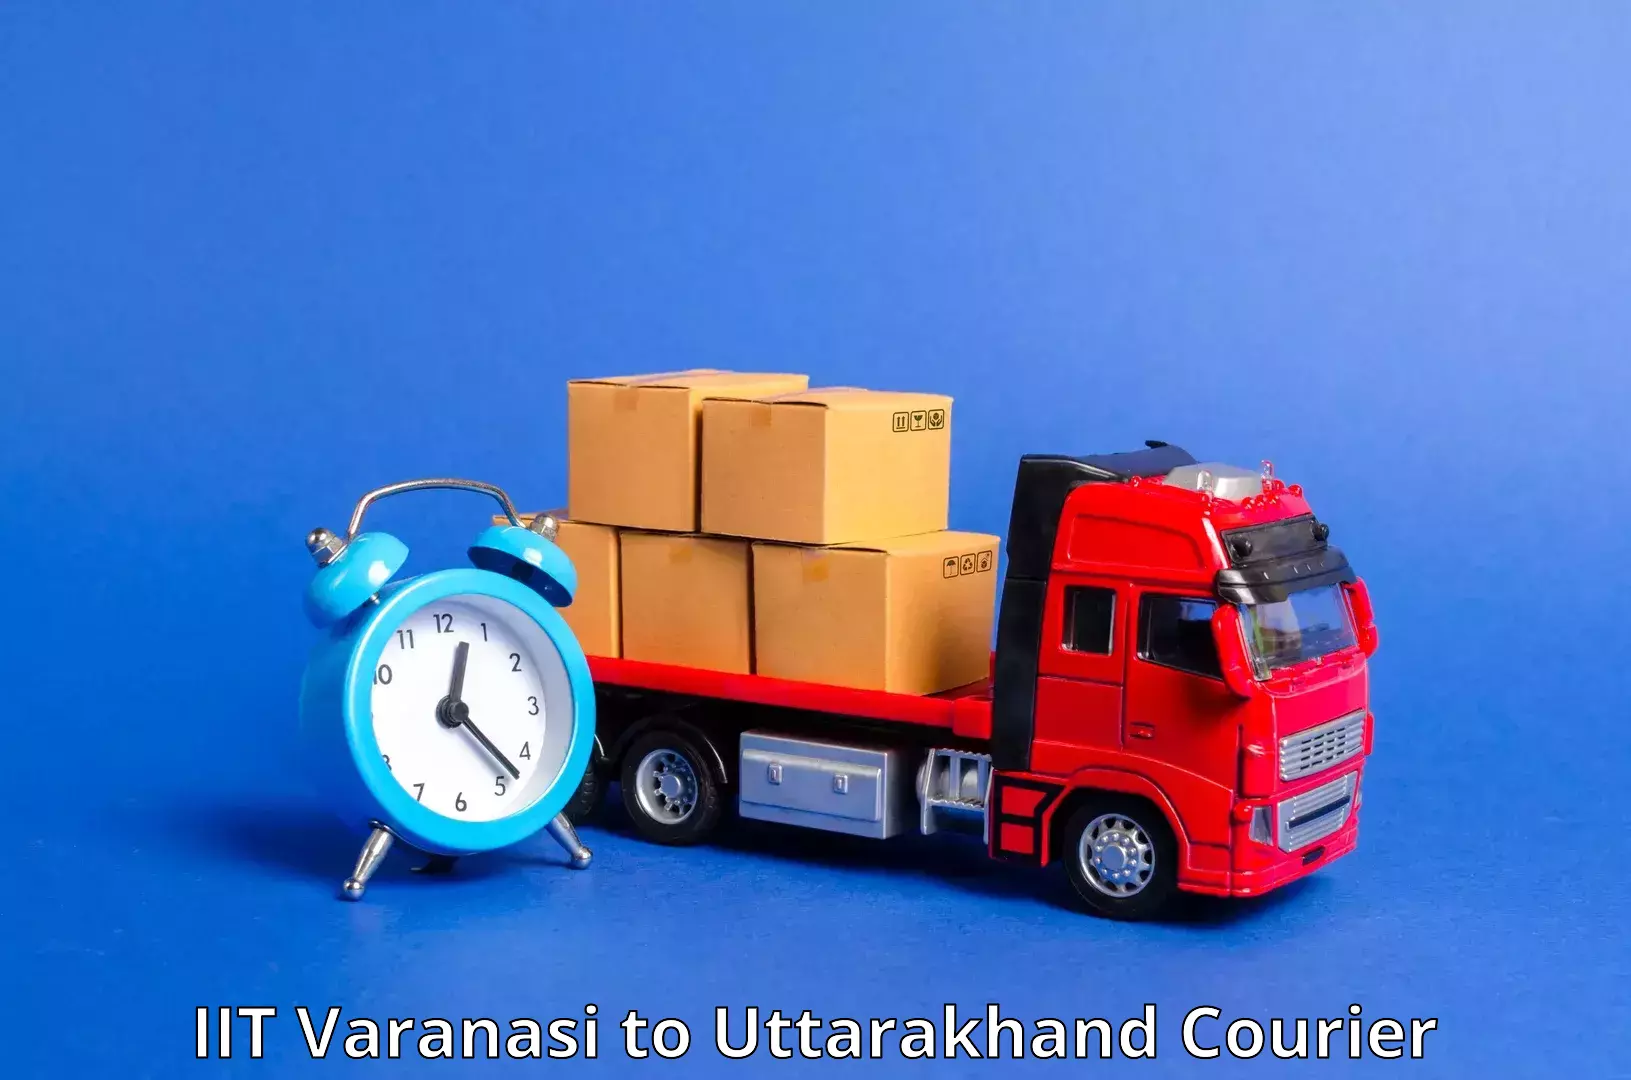 Doorstep delivery service IIT Varanasi to Someshwar